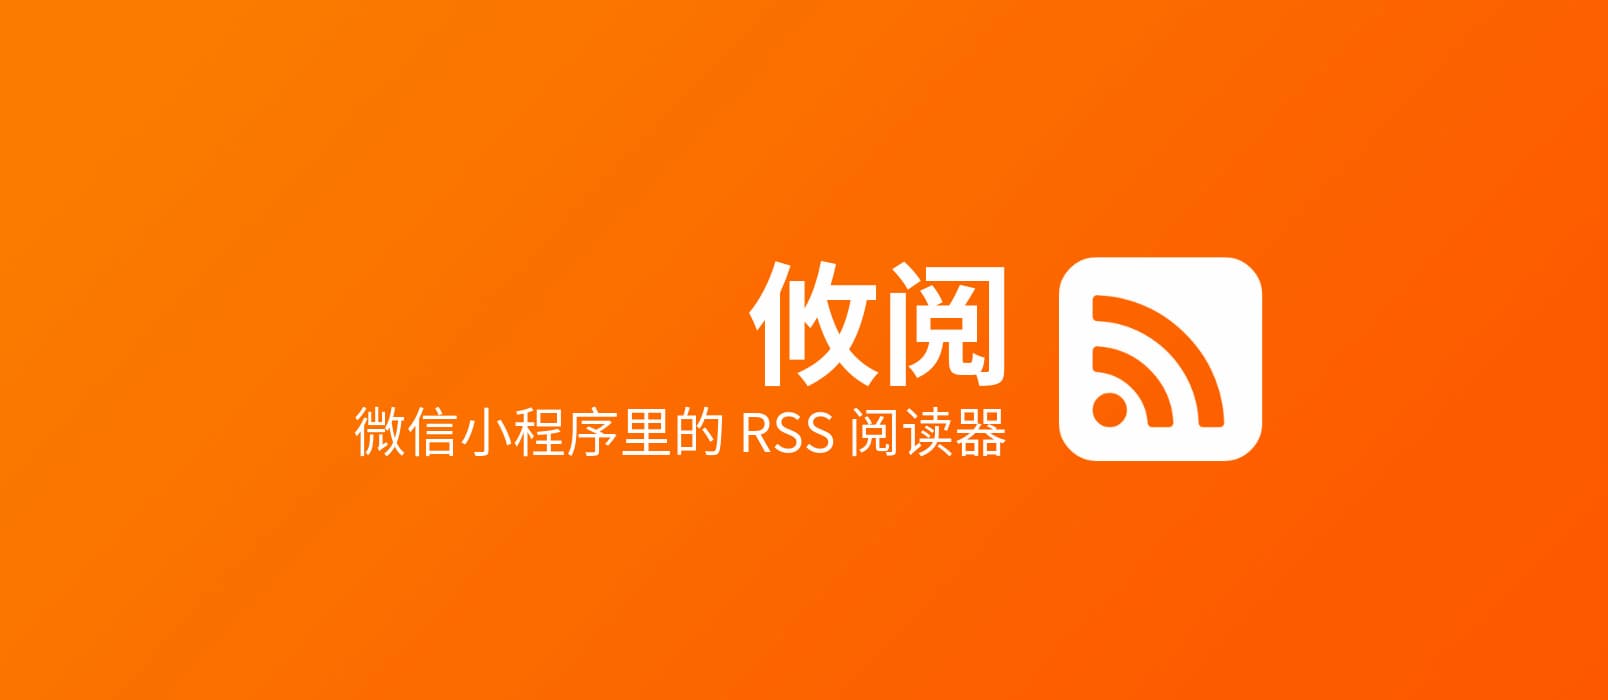 攸阅 - 微信小程序里的 RSS 阅读器 1